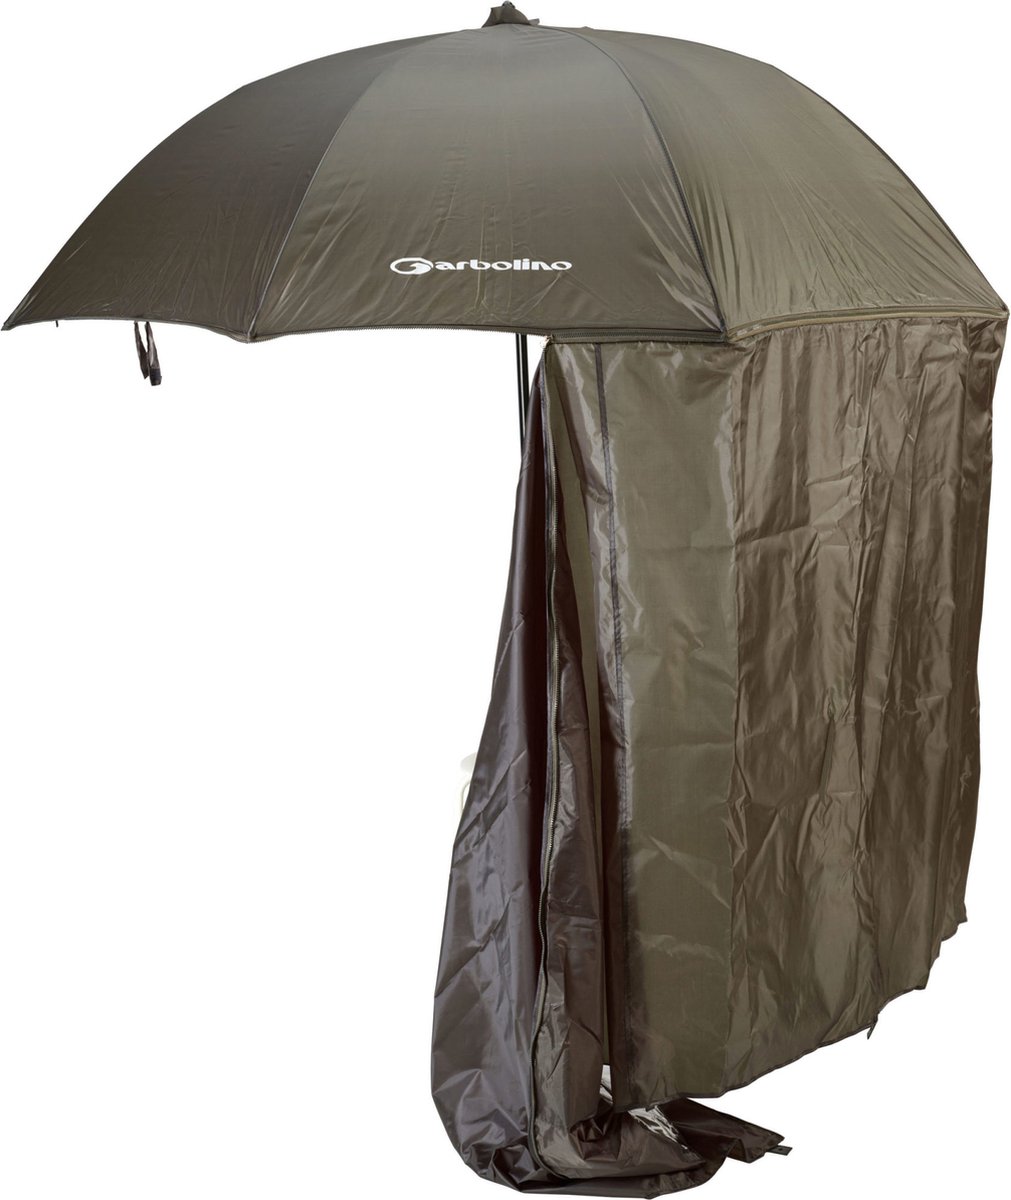 Garbolino Paraplu Tent Bullet - Garbolino